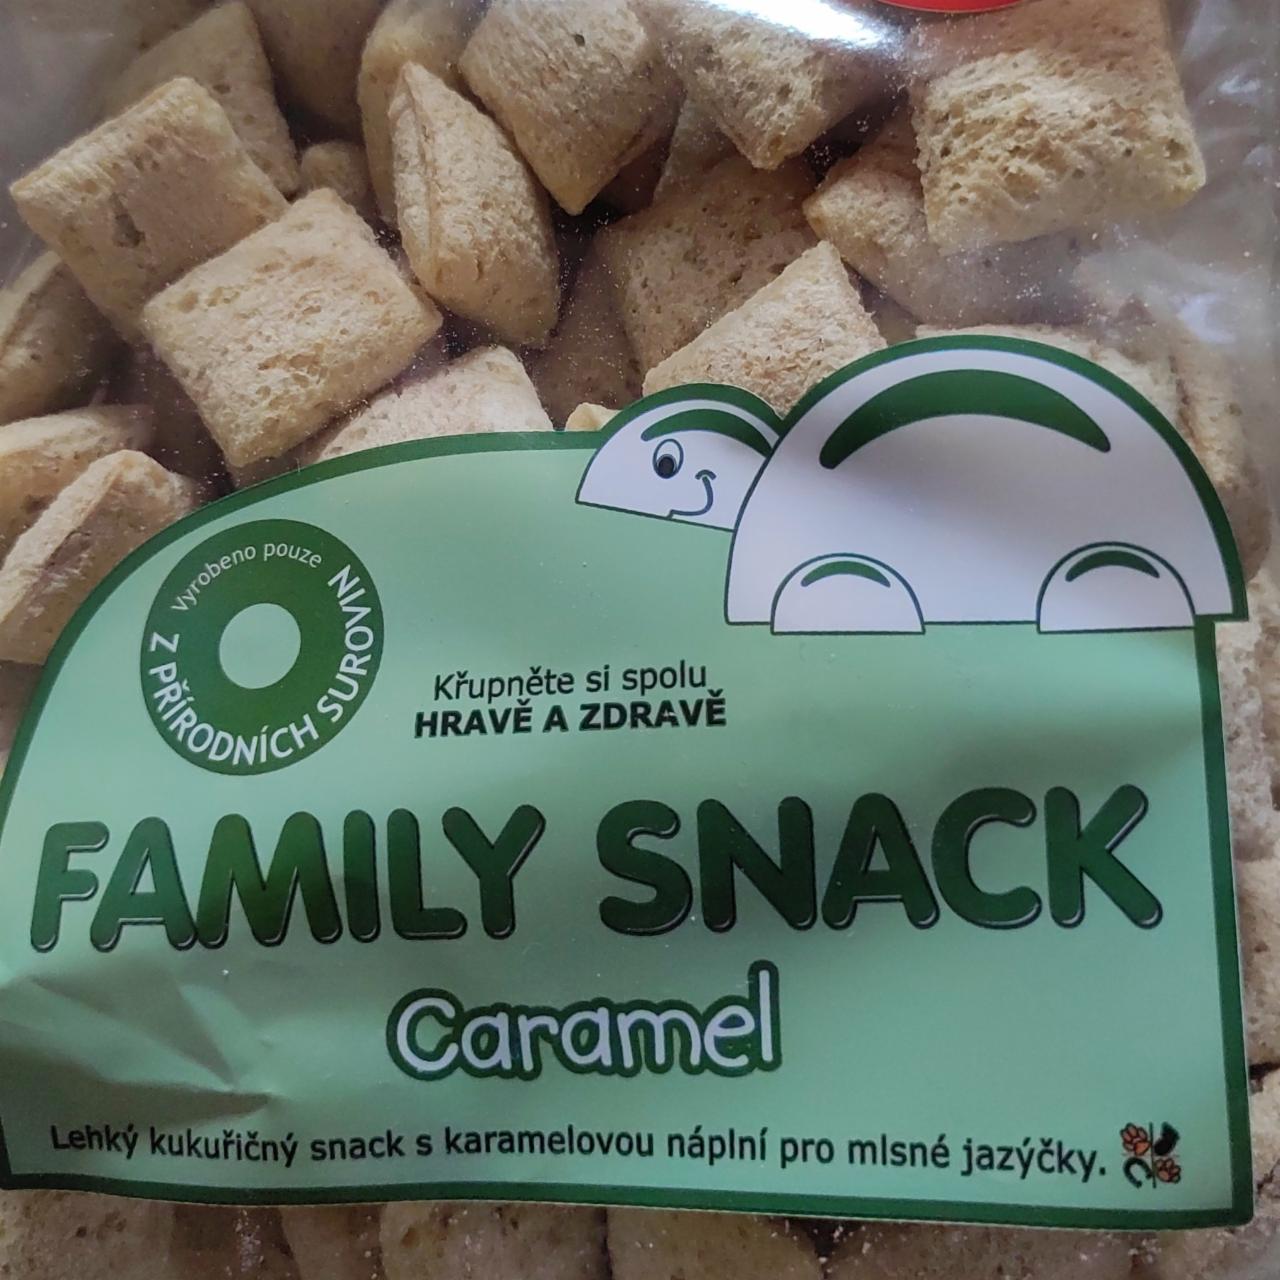 Fotografie - Family snack caramel